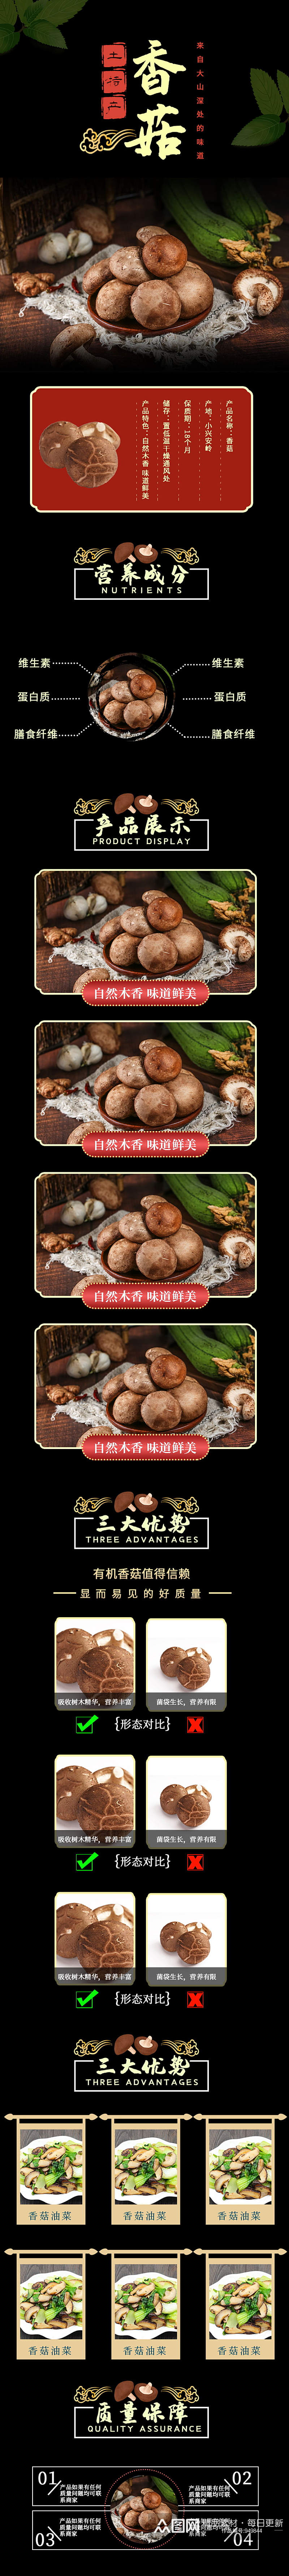 食品生鲜土特产香菇详情页素材